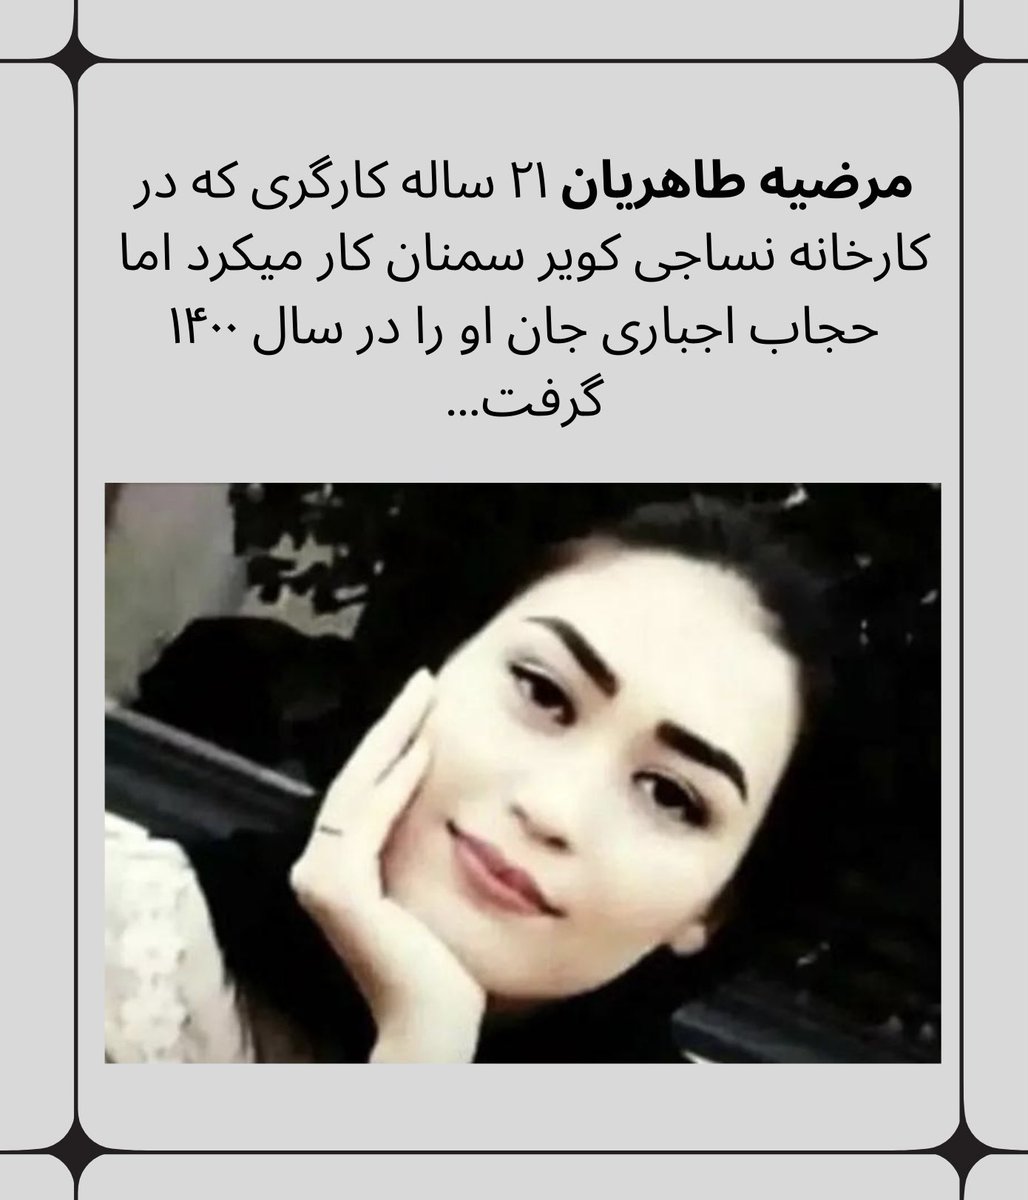 به مناسبت #روز_جهانی_کارگر و #روز_معلم می‌بایست به وضعیت نگران‌کننده فعالان کارگری و صنفی در ایران توجه کنیم. همچنان تعداد زیادی از فعالان کارگری و فعالان کانون‌های صنفی معلمان زندانی هستند… ۱/